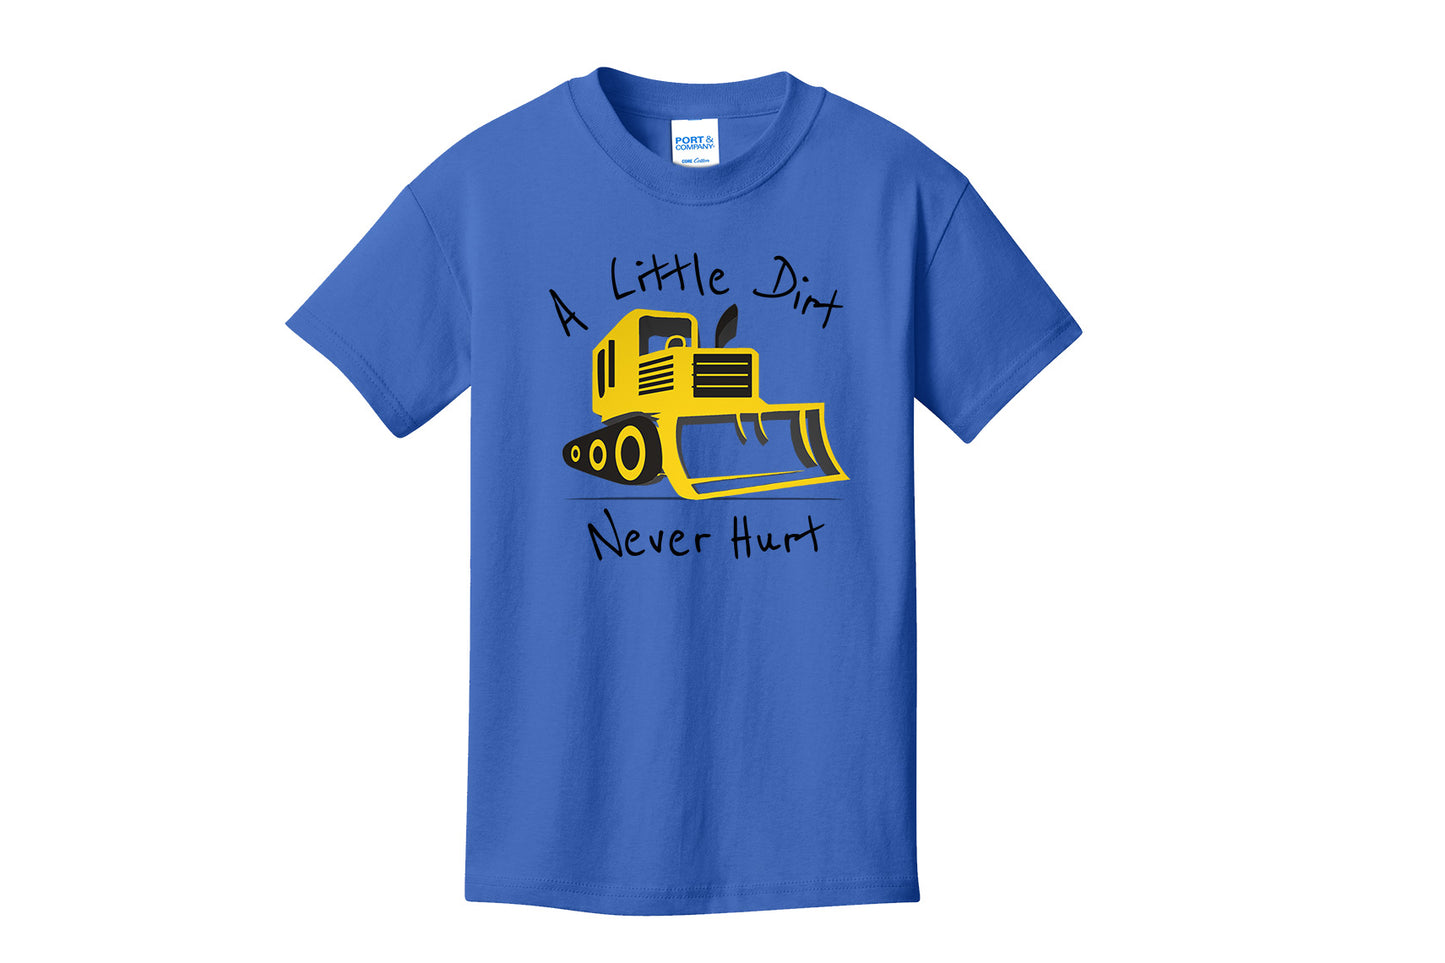 A Little Dirt Never Hurt Youth T-Shirt, Boy's Construction Tees